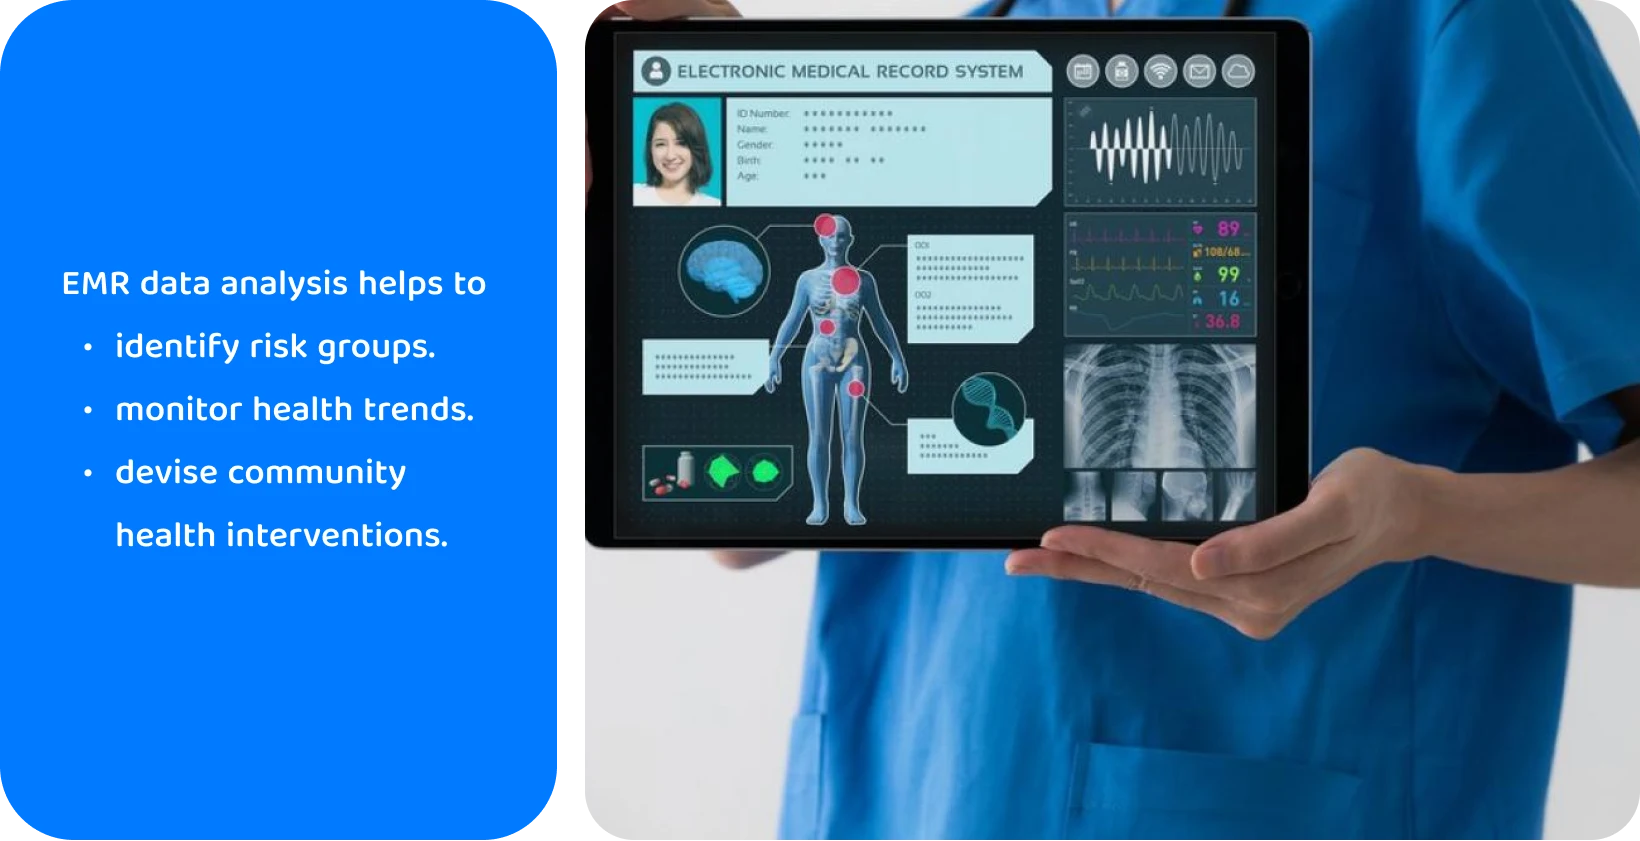 Medisinsk profesjonell bruker et nettbrett med et elektronisk pasientjournalsystem for å analysere pasientens helsedata.